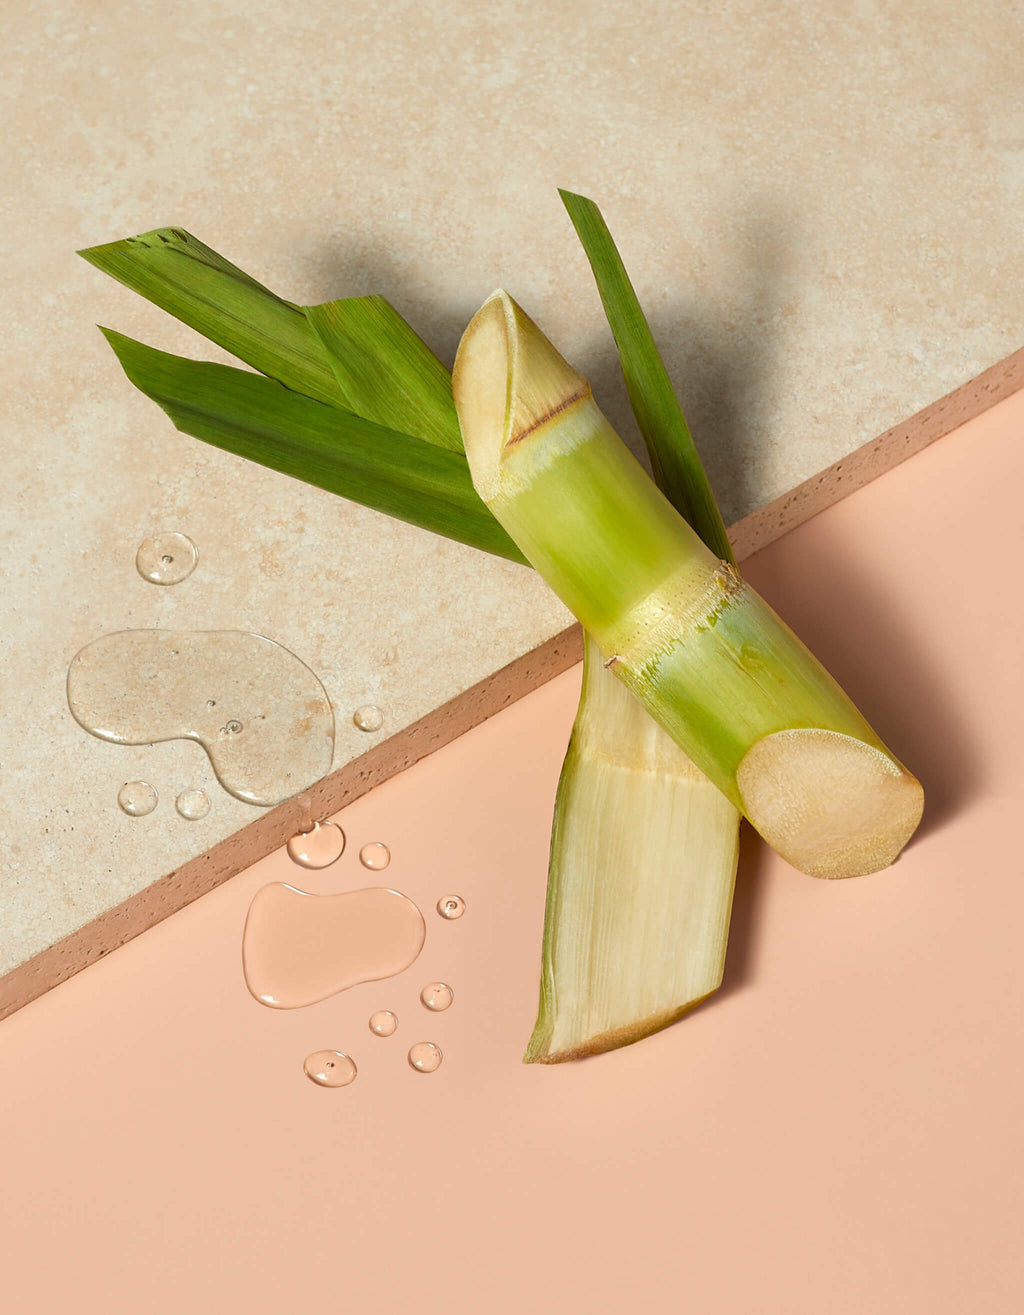 Sugarcane image